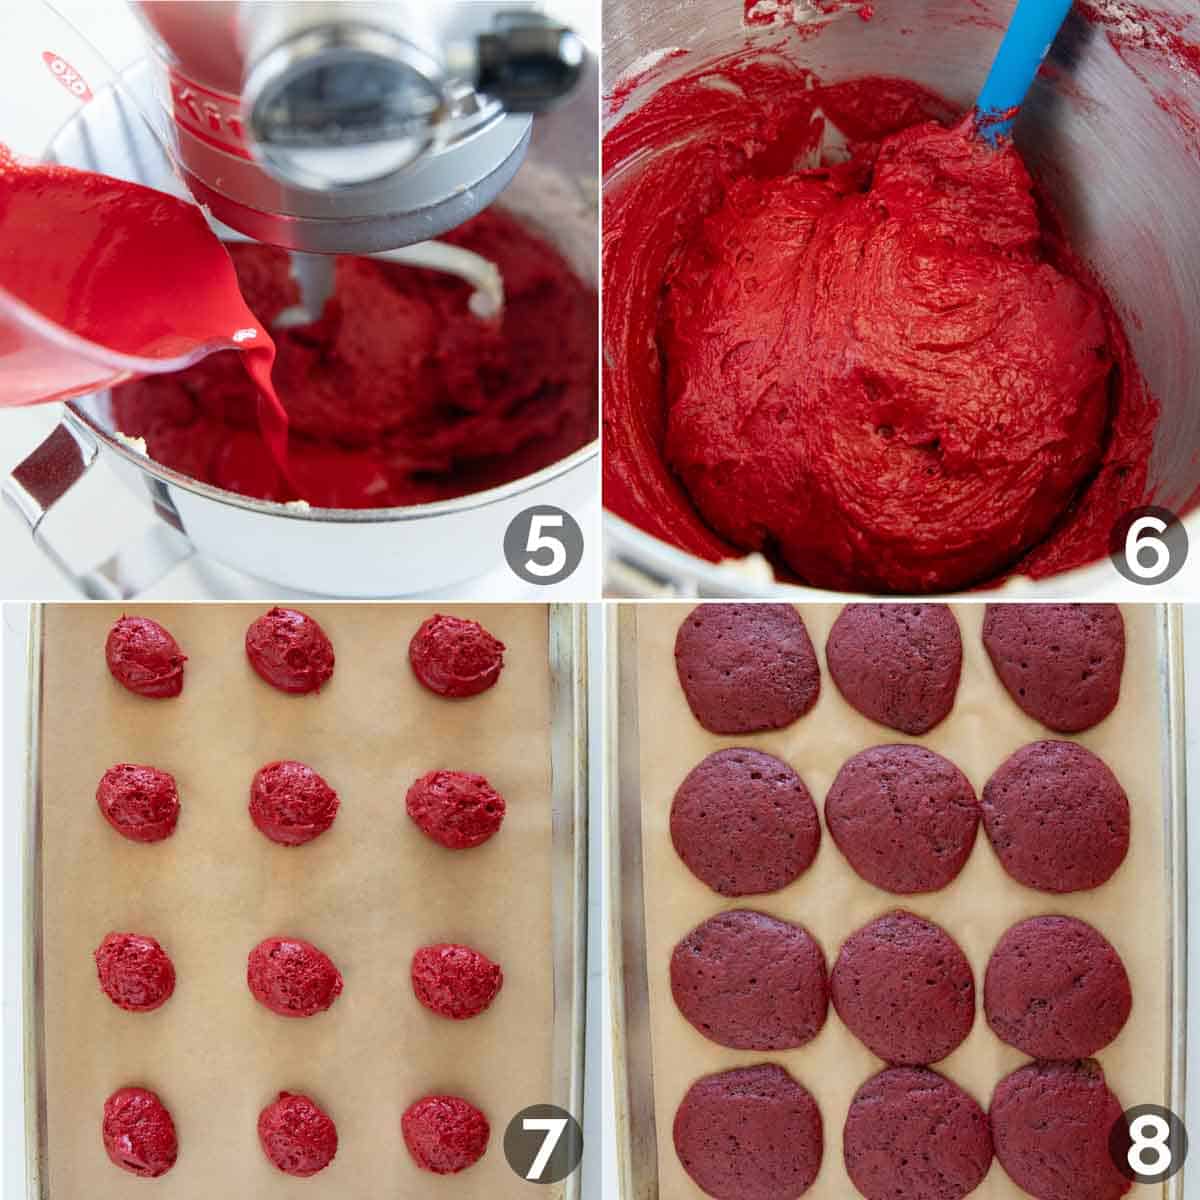 Steps to make batter for red velvet whoopie pies.